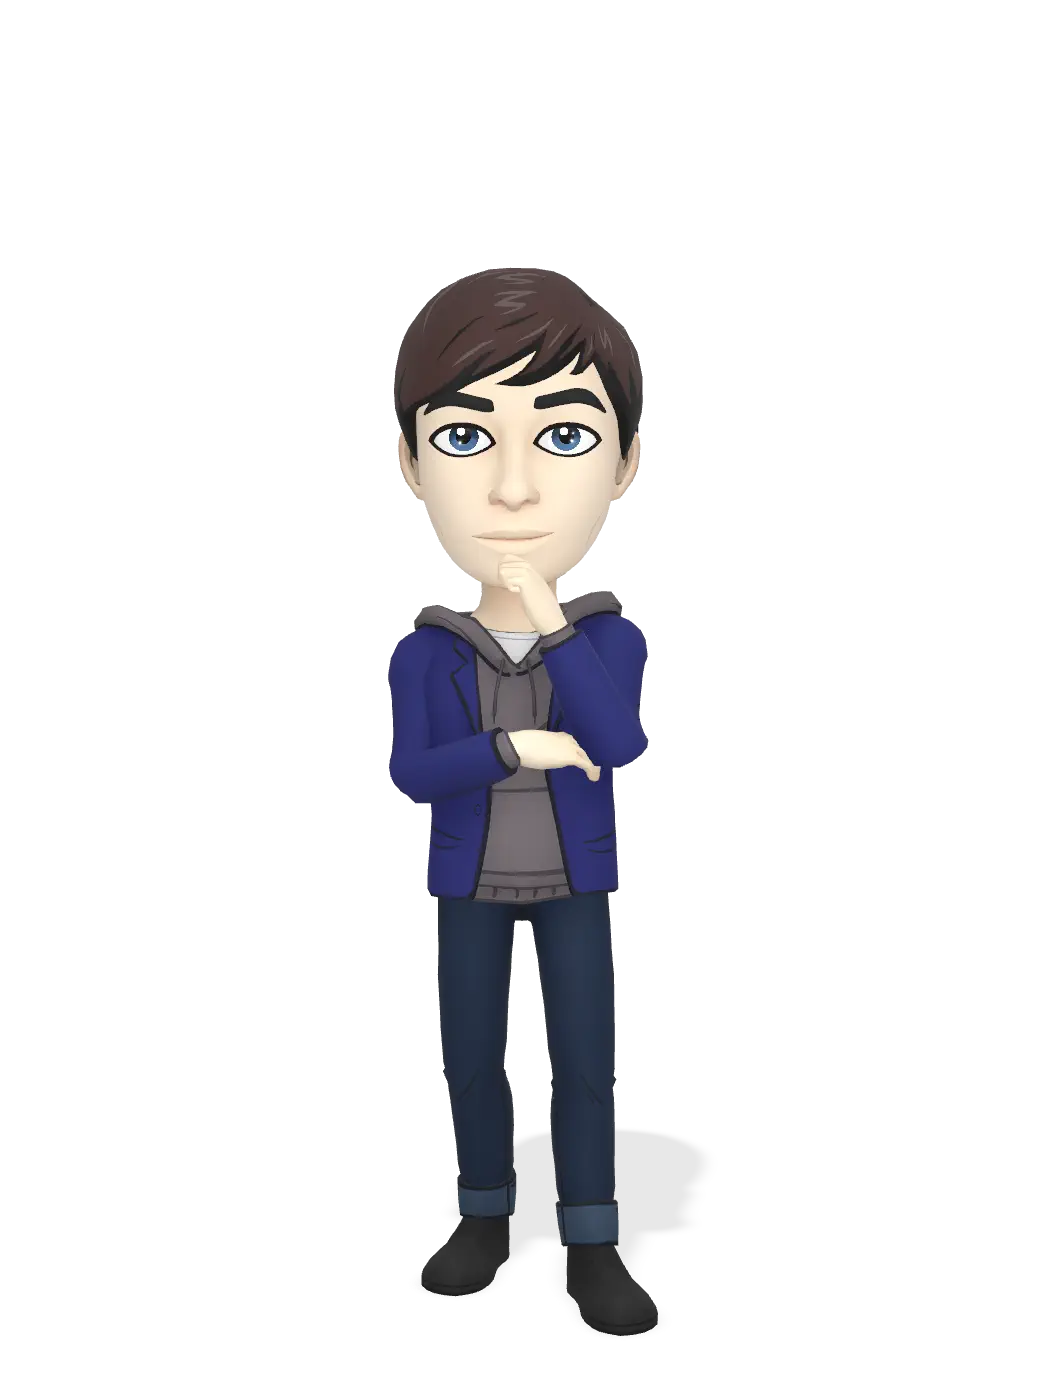 3D Bitmoji for joshmetta avatar